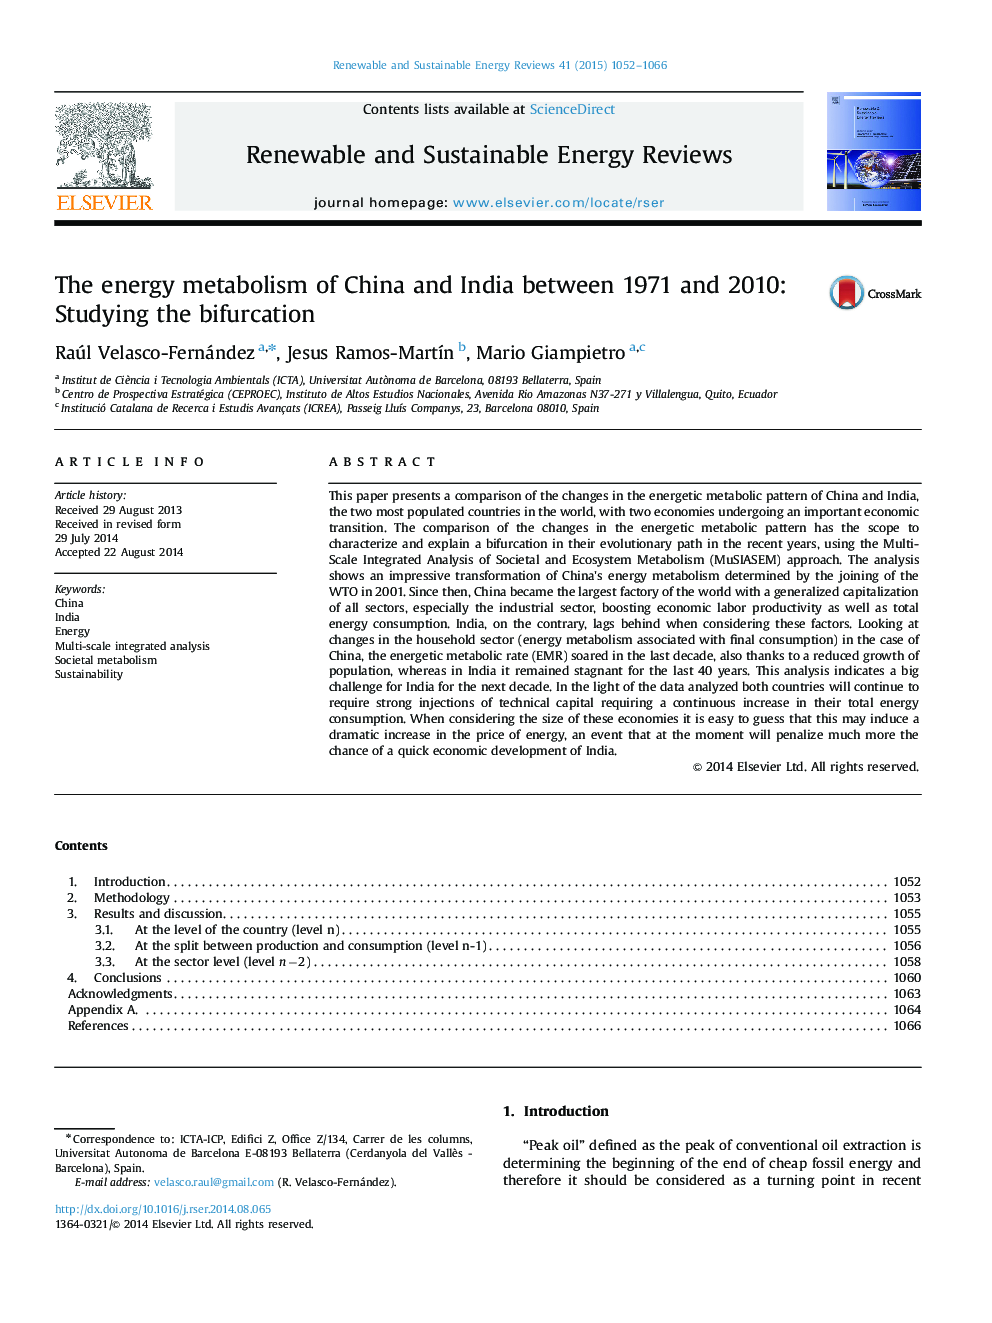 متابولیسم انرژی در چین و هند بین سالهای 1971 و 2010: مطالعه دوگانگی 